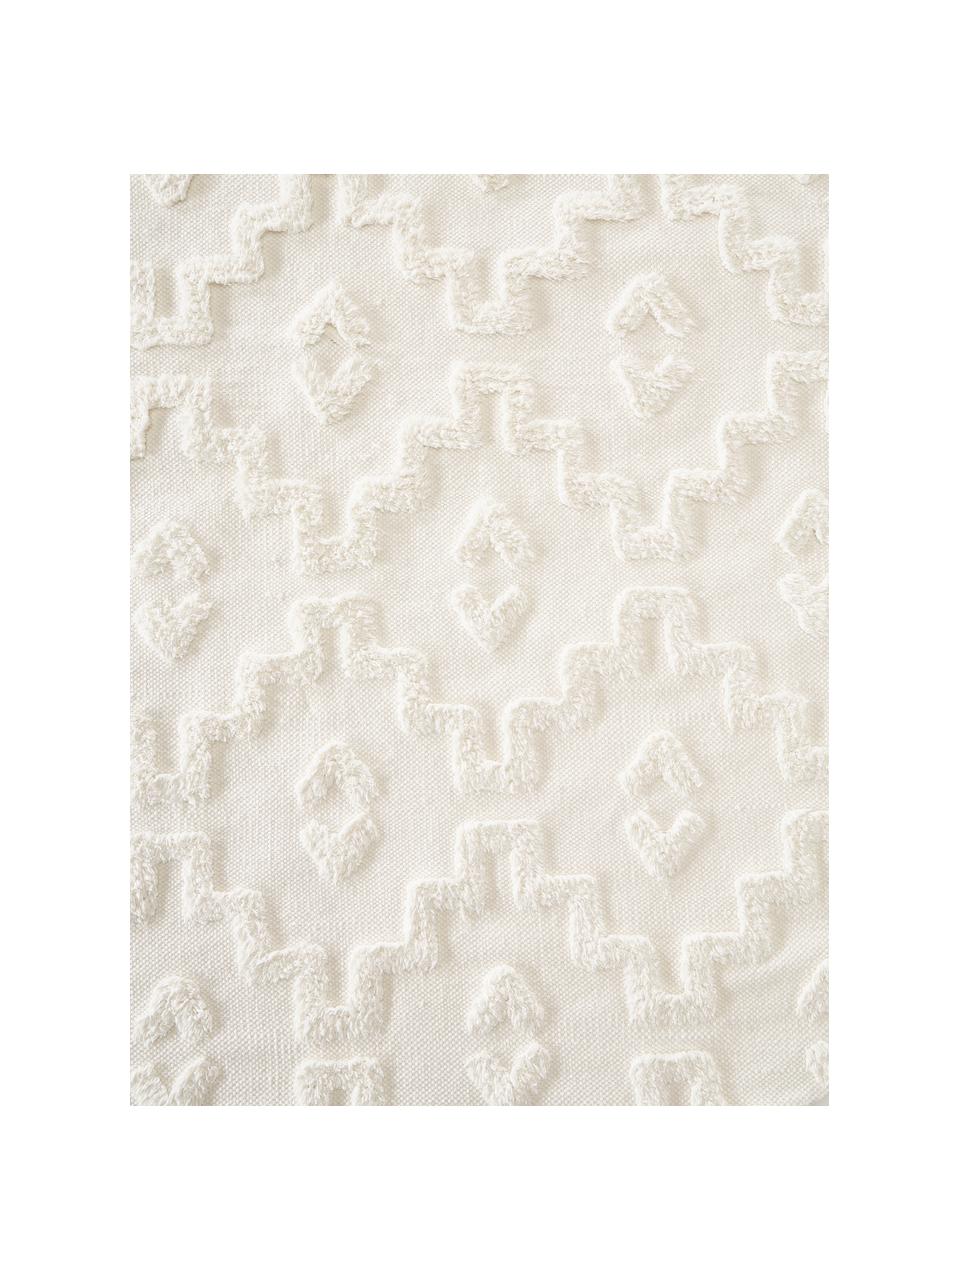 Tappeto rotondo in cotone con struttura in rilievo Idris, 100% cotone, Bianco crema, Ø 120 cm (taglia S)